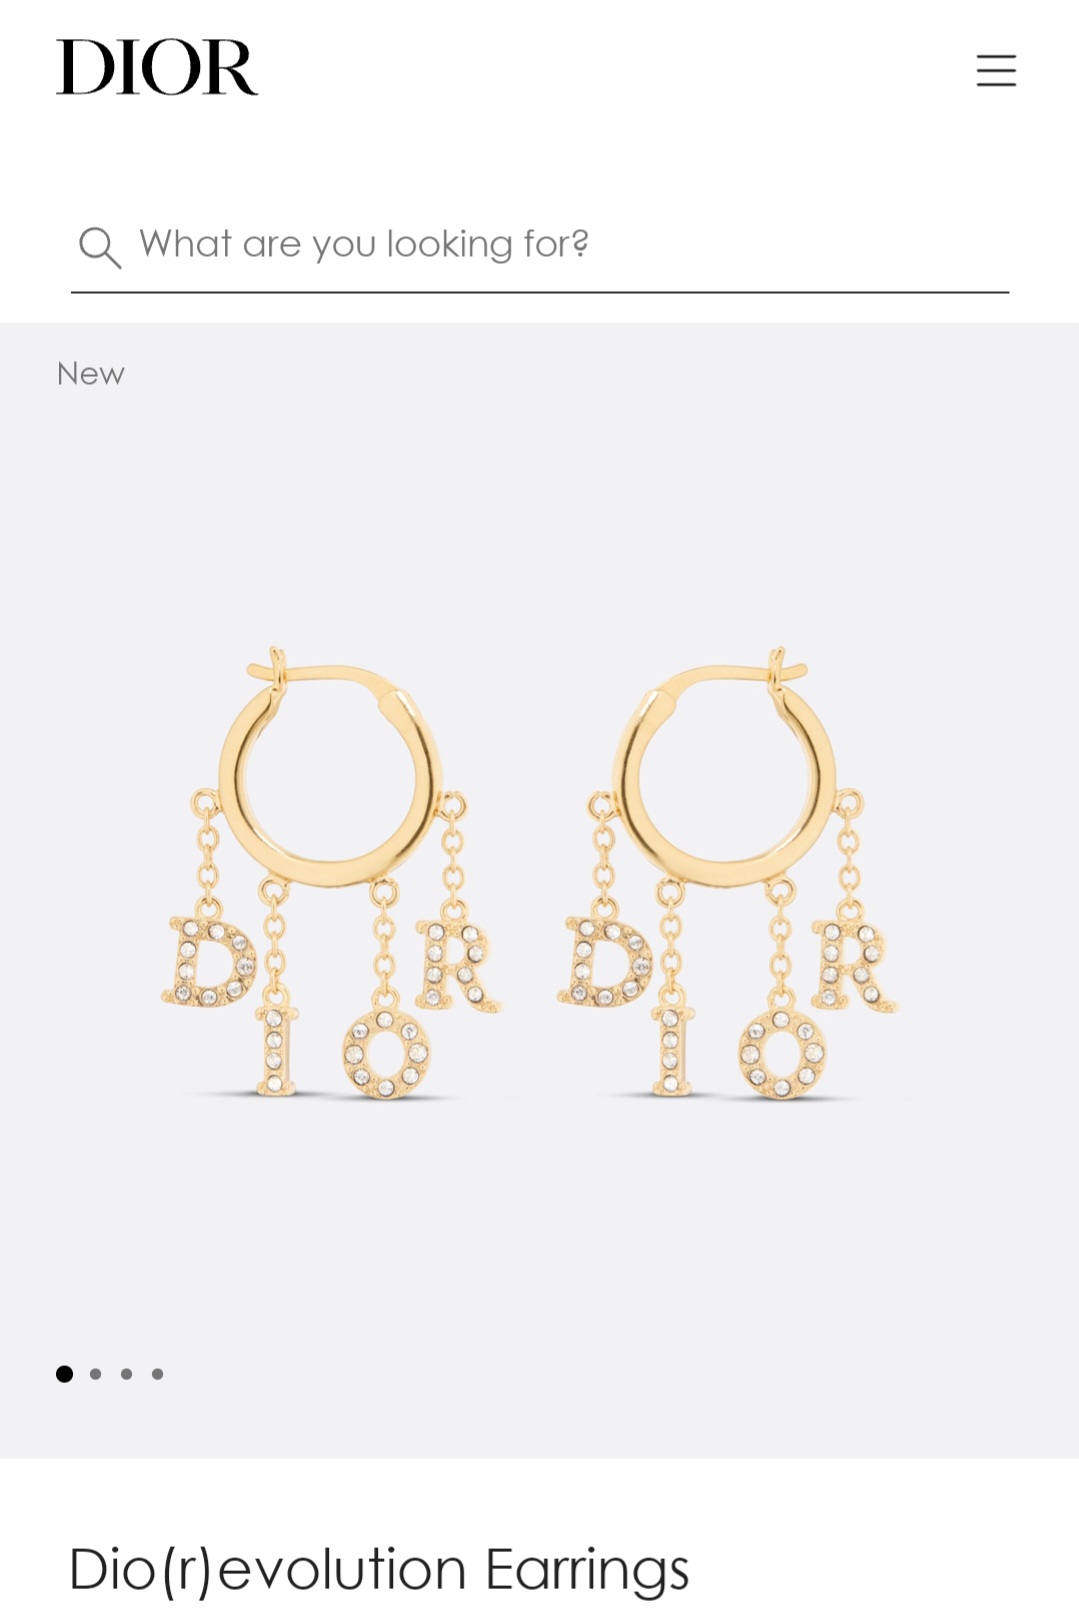 Dior revolution earrings